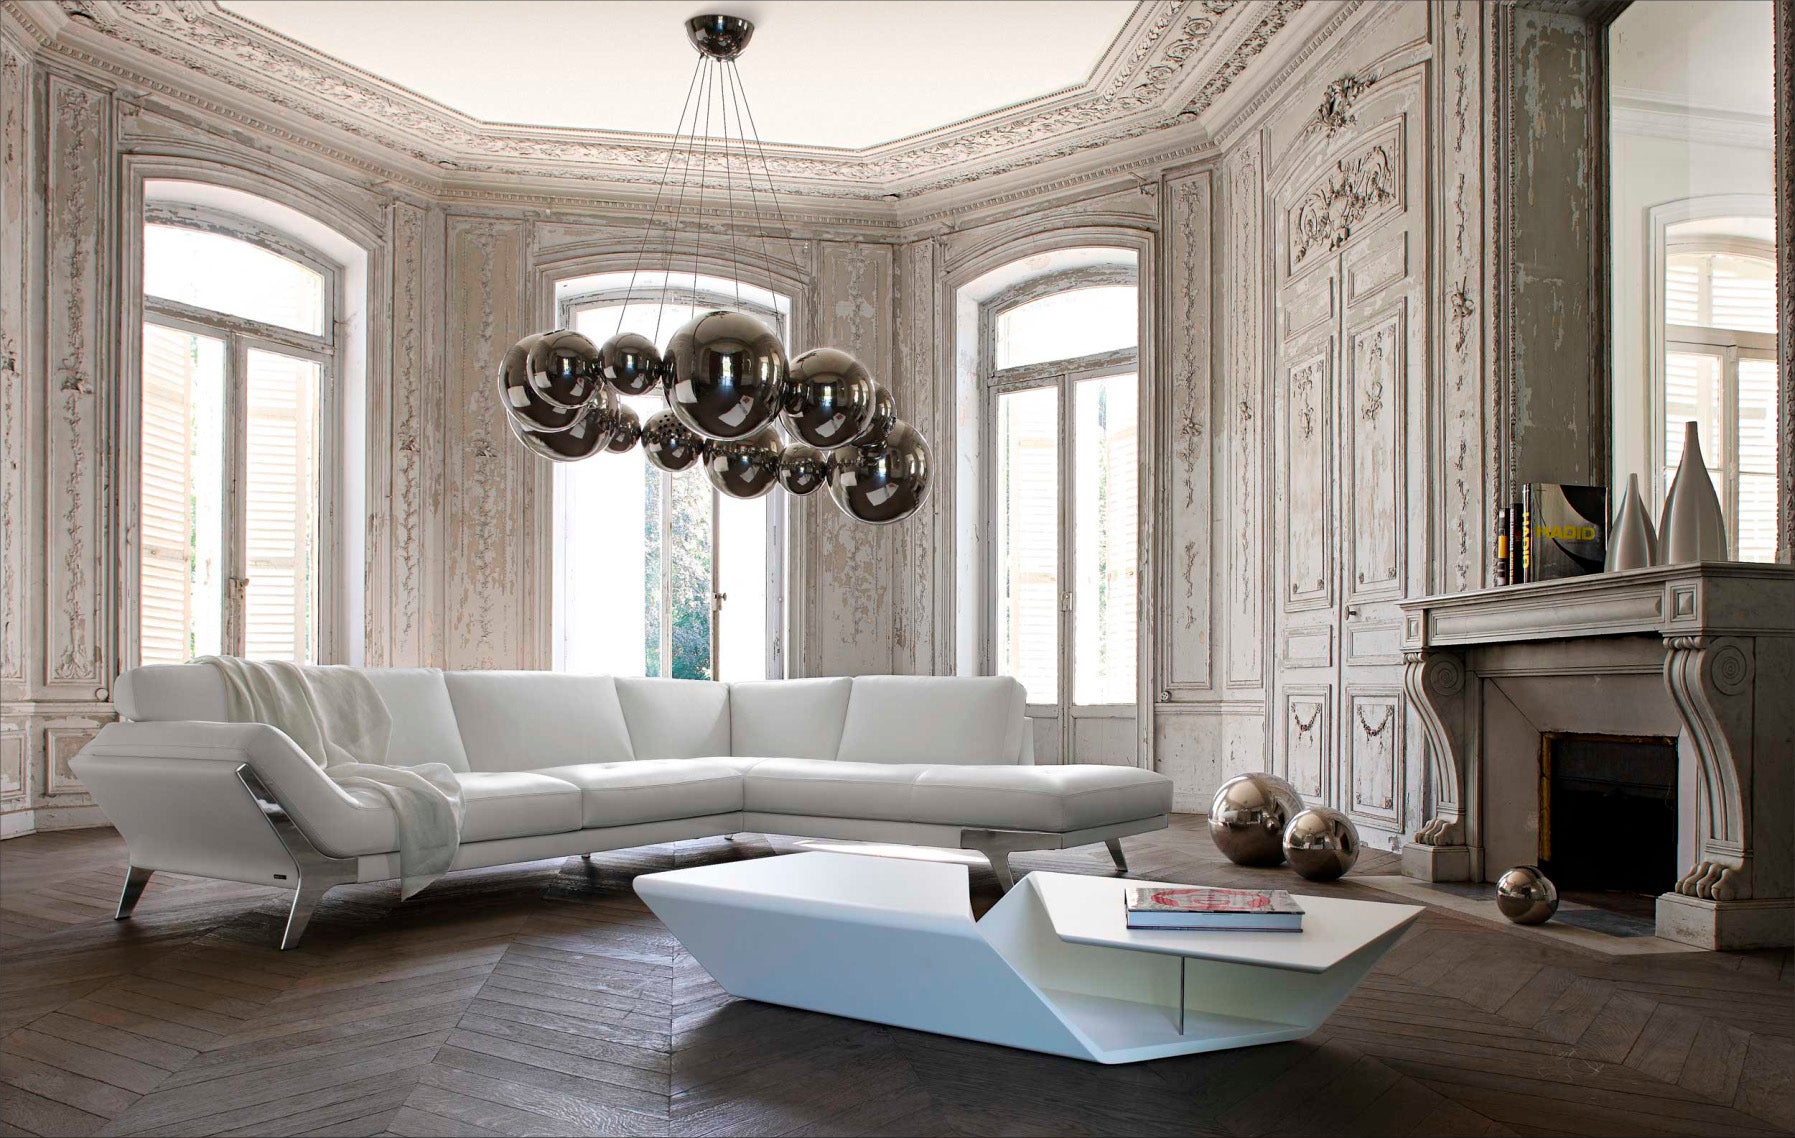 VIG Furniture Divani Casa Lidia White Italian Leather Sectional Sofa